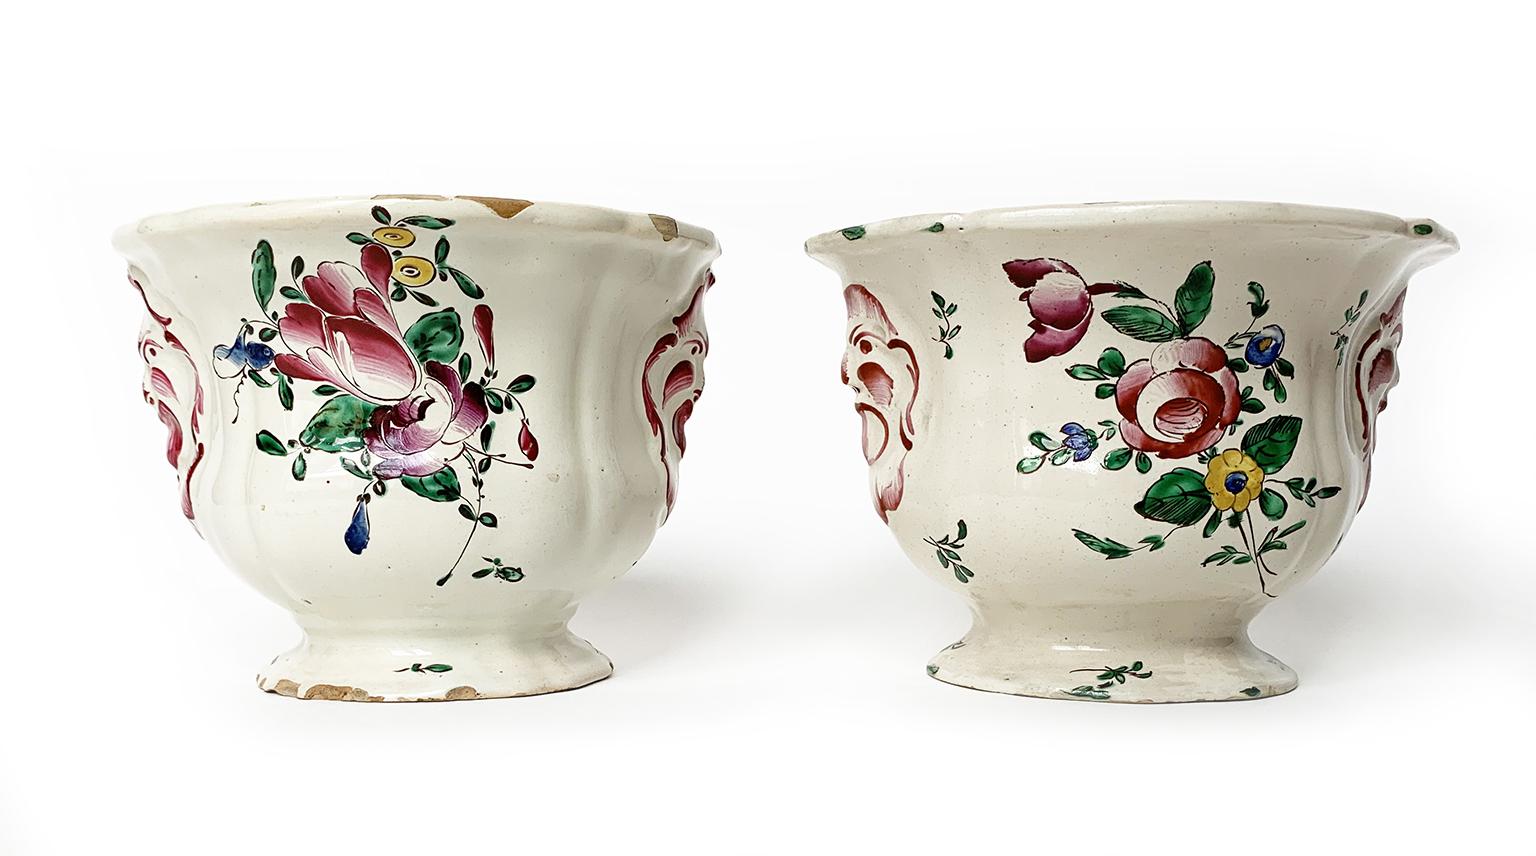 Pair of flower pots
Antonio Ferretti Manufacture
Lodi, circa 1770 – 1780
Maiolica polychrome decorated “a piccolo fuoco” (third fire)
They measure:
A 4.7 x 6.6 x 5.7 in (12 x 17 x 14,5 cm); peso 0.85 lb (390 g)
B 4.7 x 6.49 x 5.3 in (12 x 16.5